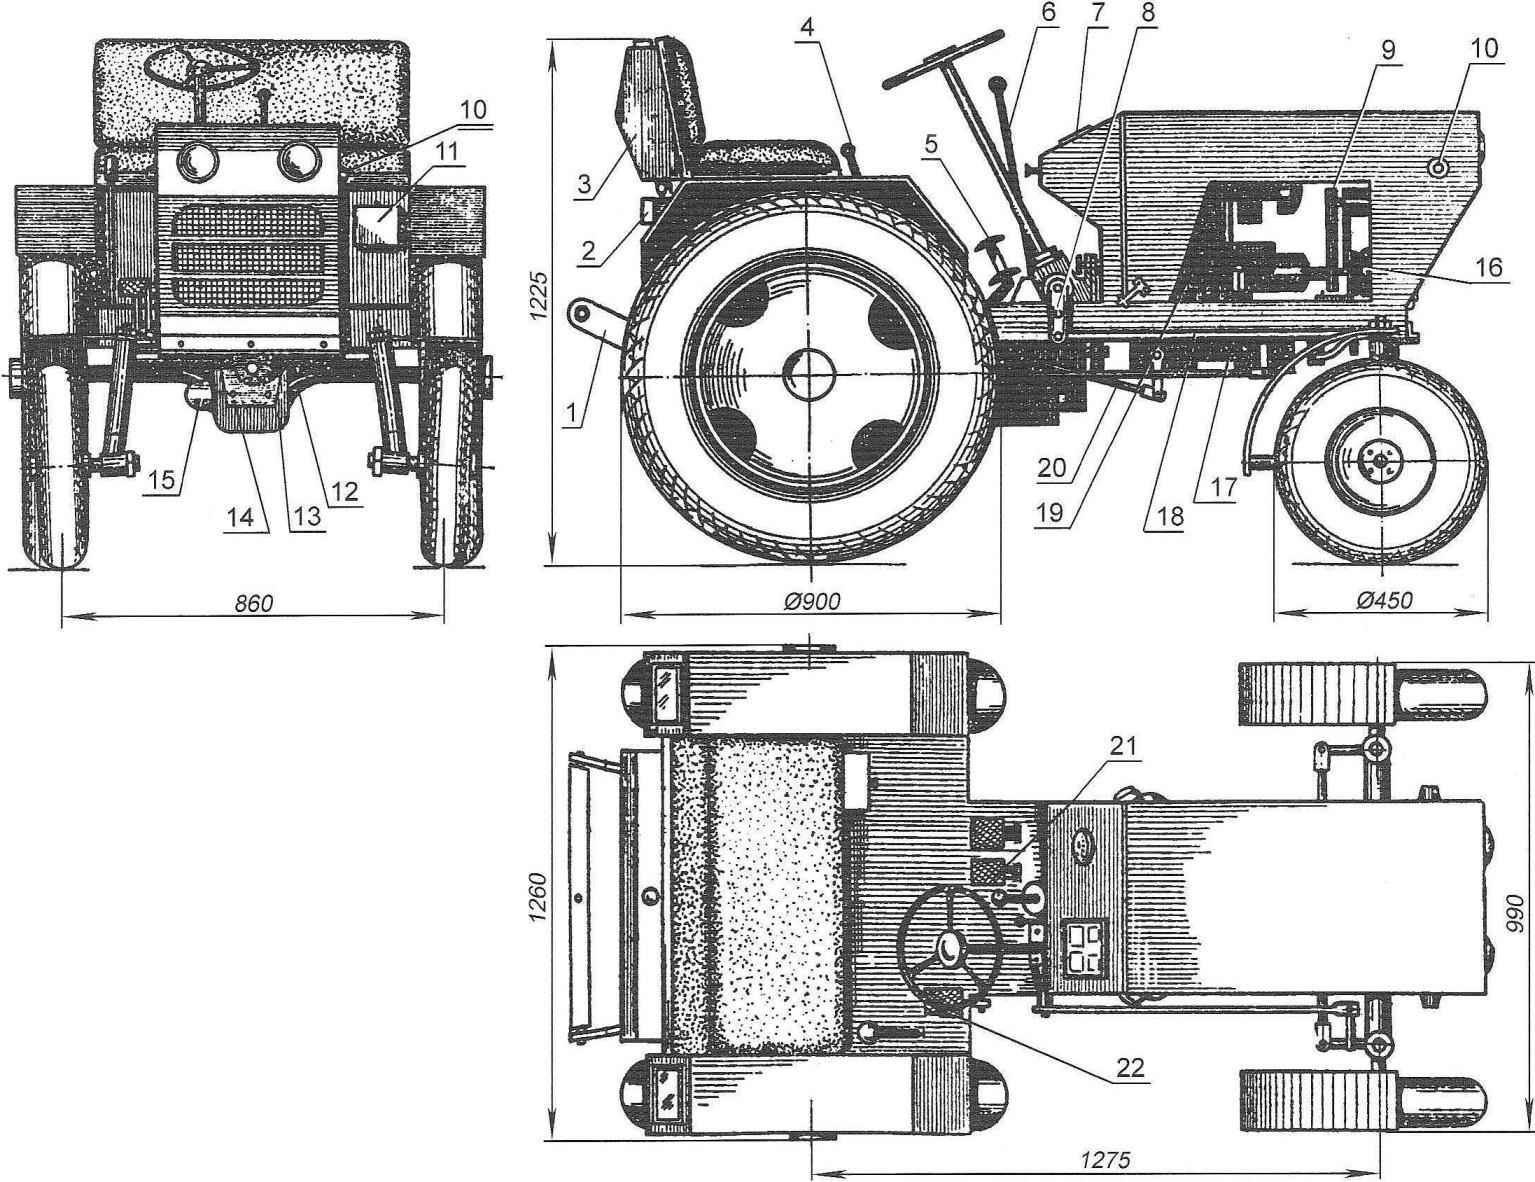 Трактор из жигулей своими руками: самодельный, двигателем ваз, как сделать, минитрактор, чертежи